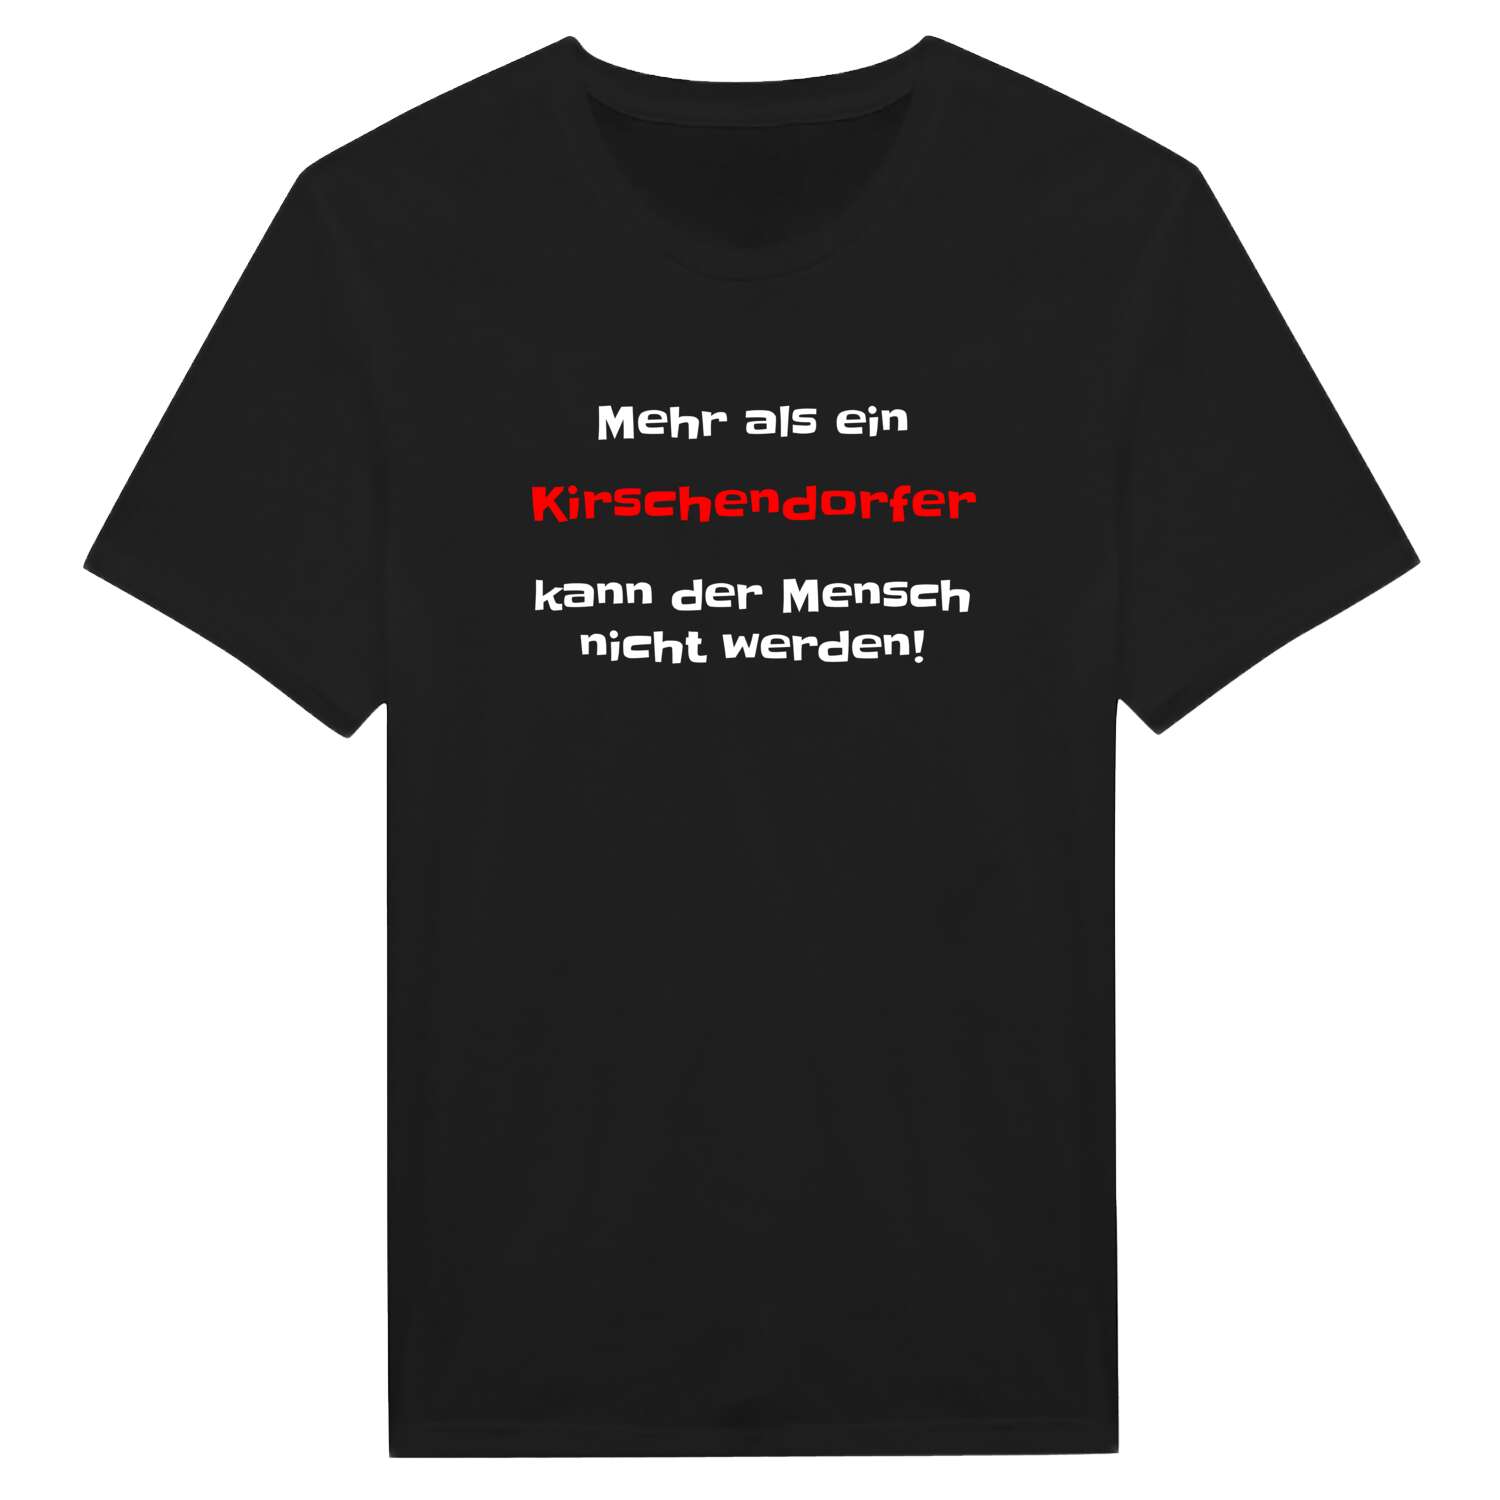 Kirschendorf T-Shirt »Mehr als ein«